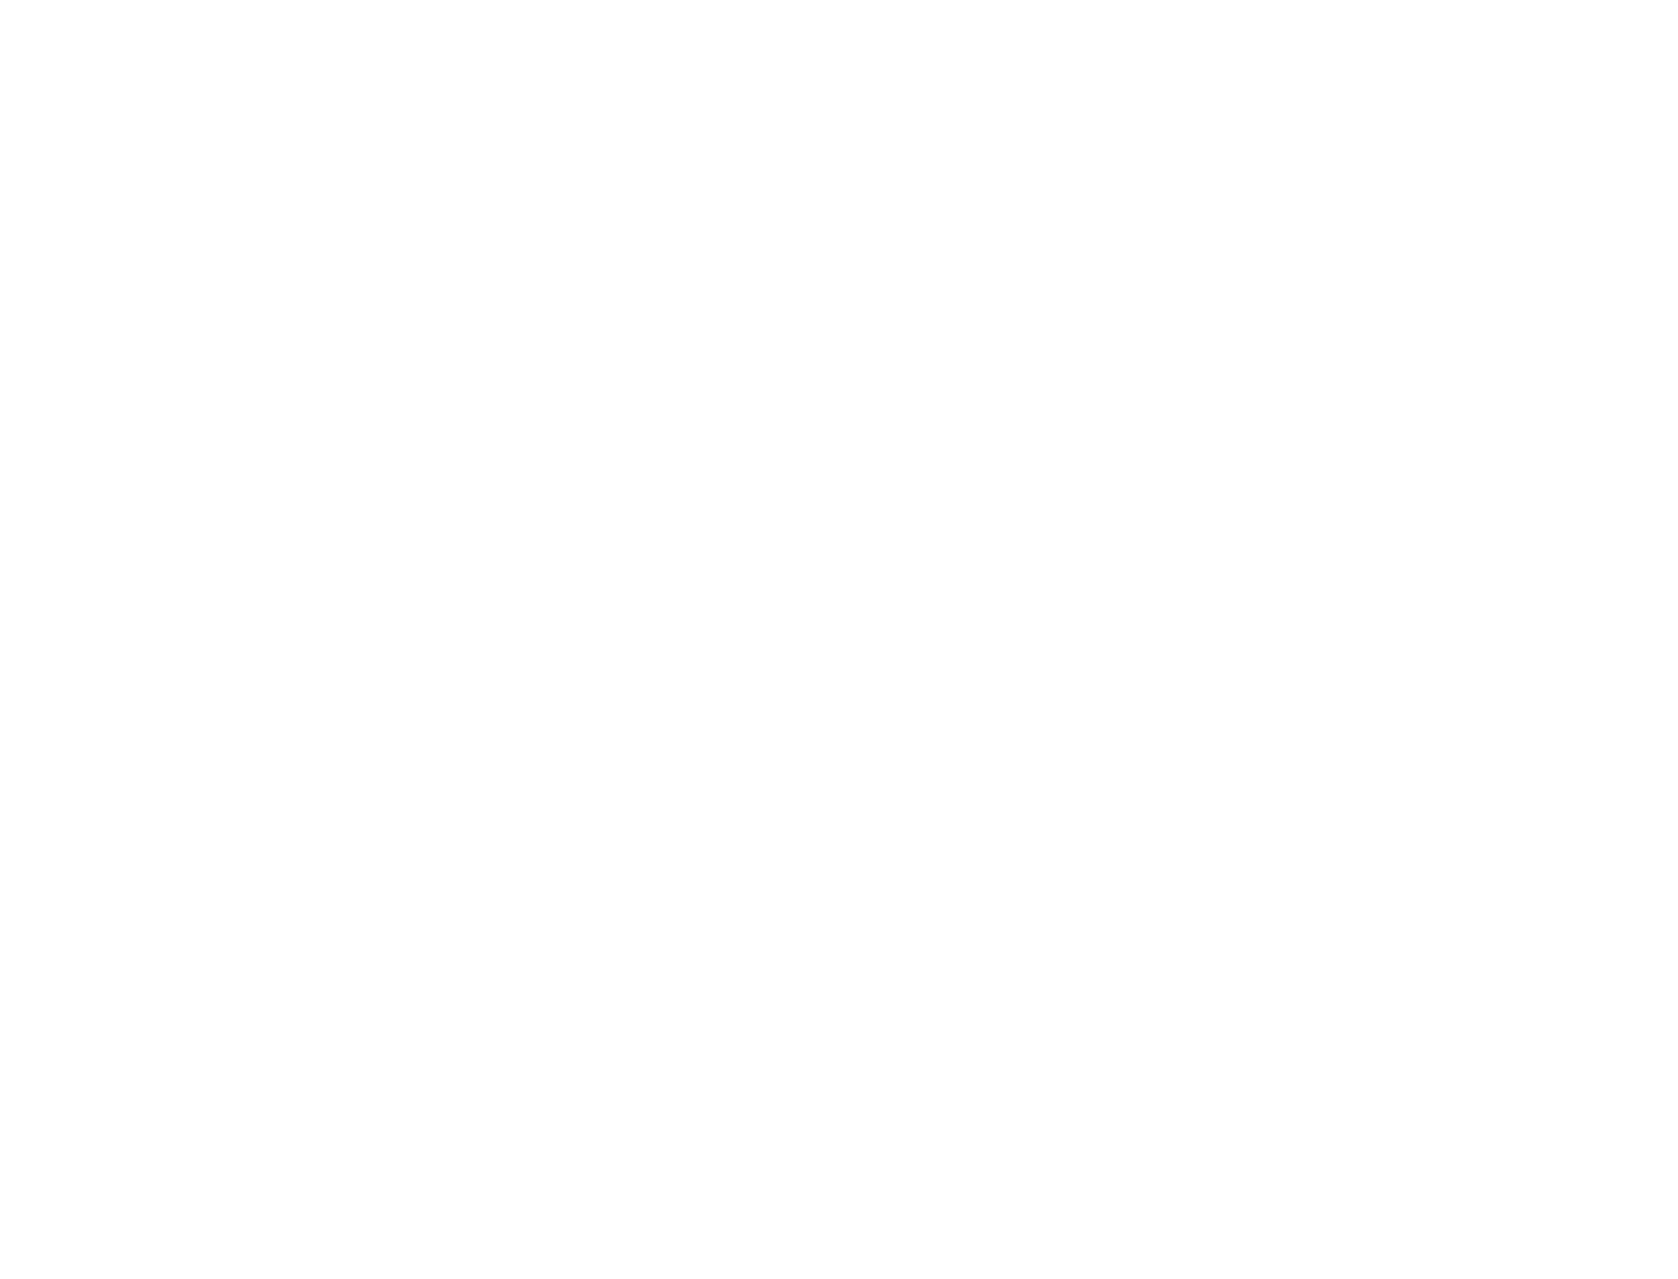 Arca Continental logo pour fonds sombres (PNG transparent)